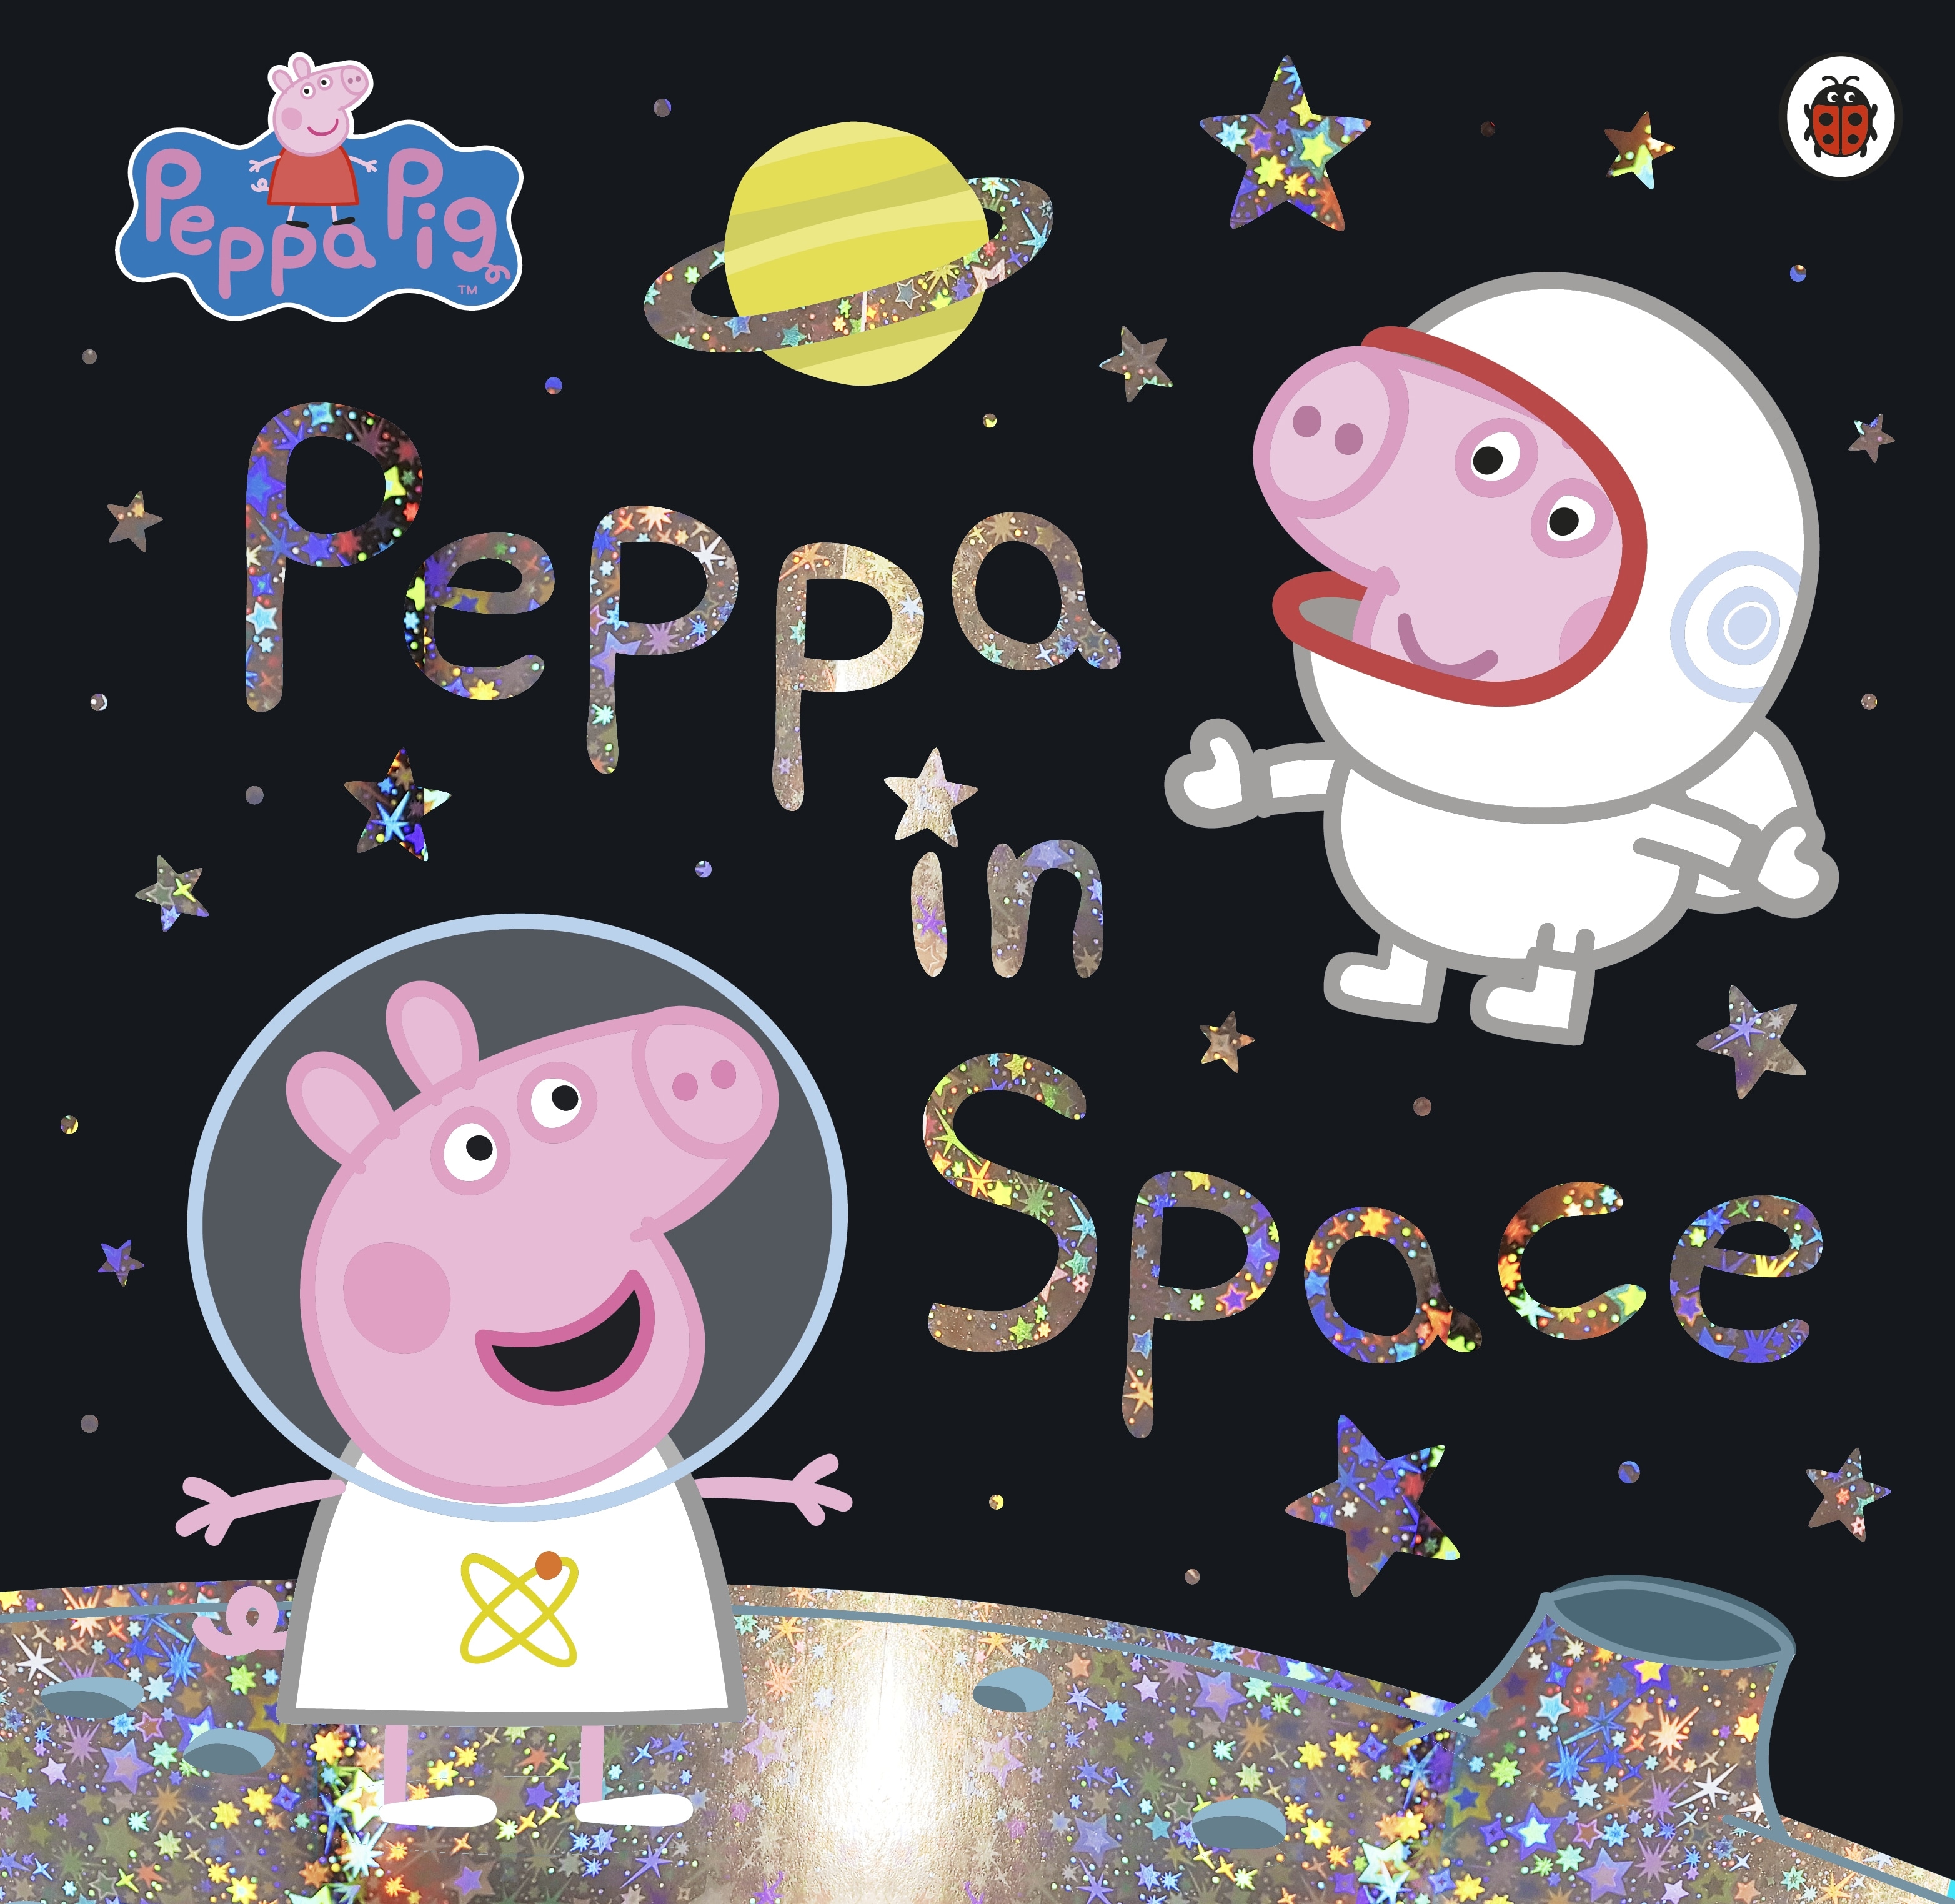 Book “Peppa Pig: Peppa in Space” by Peppa Pig — June 13, 2019